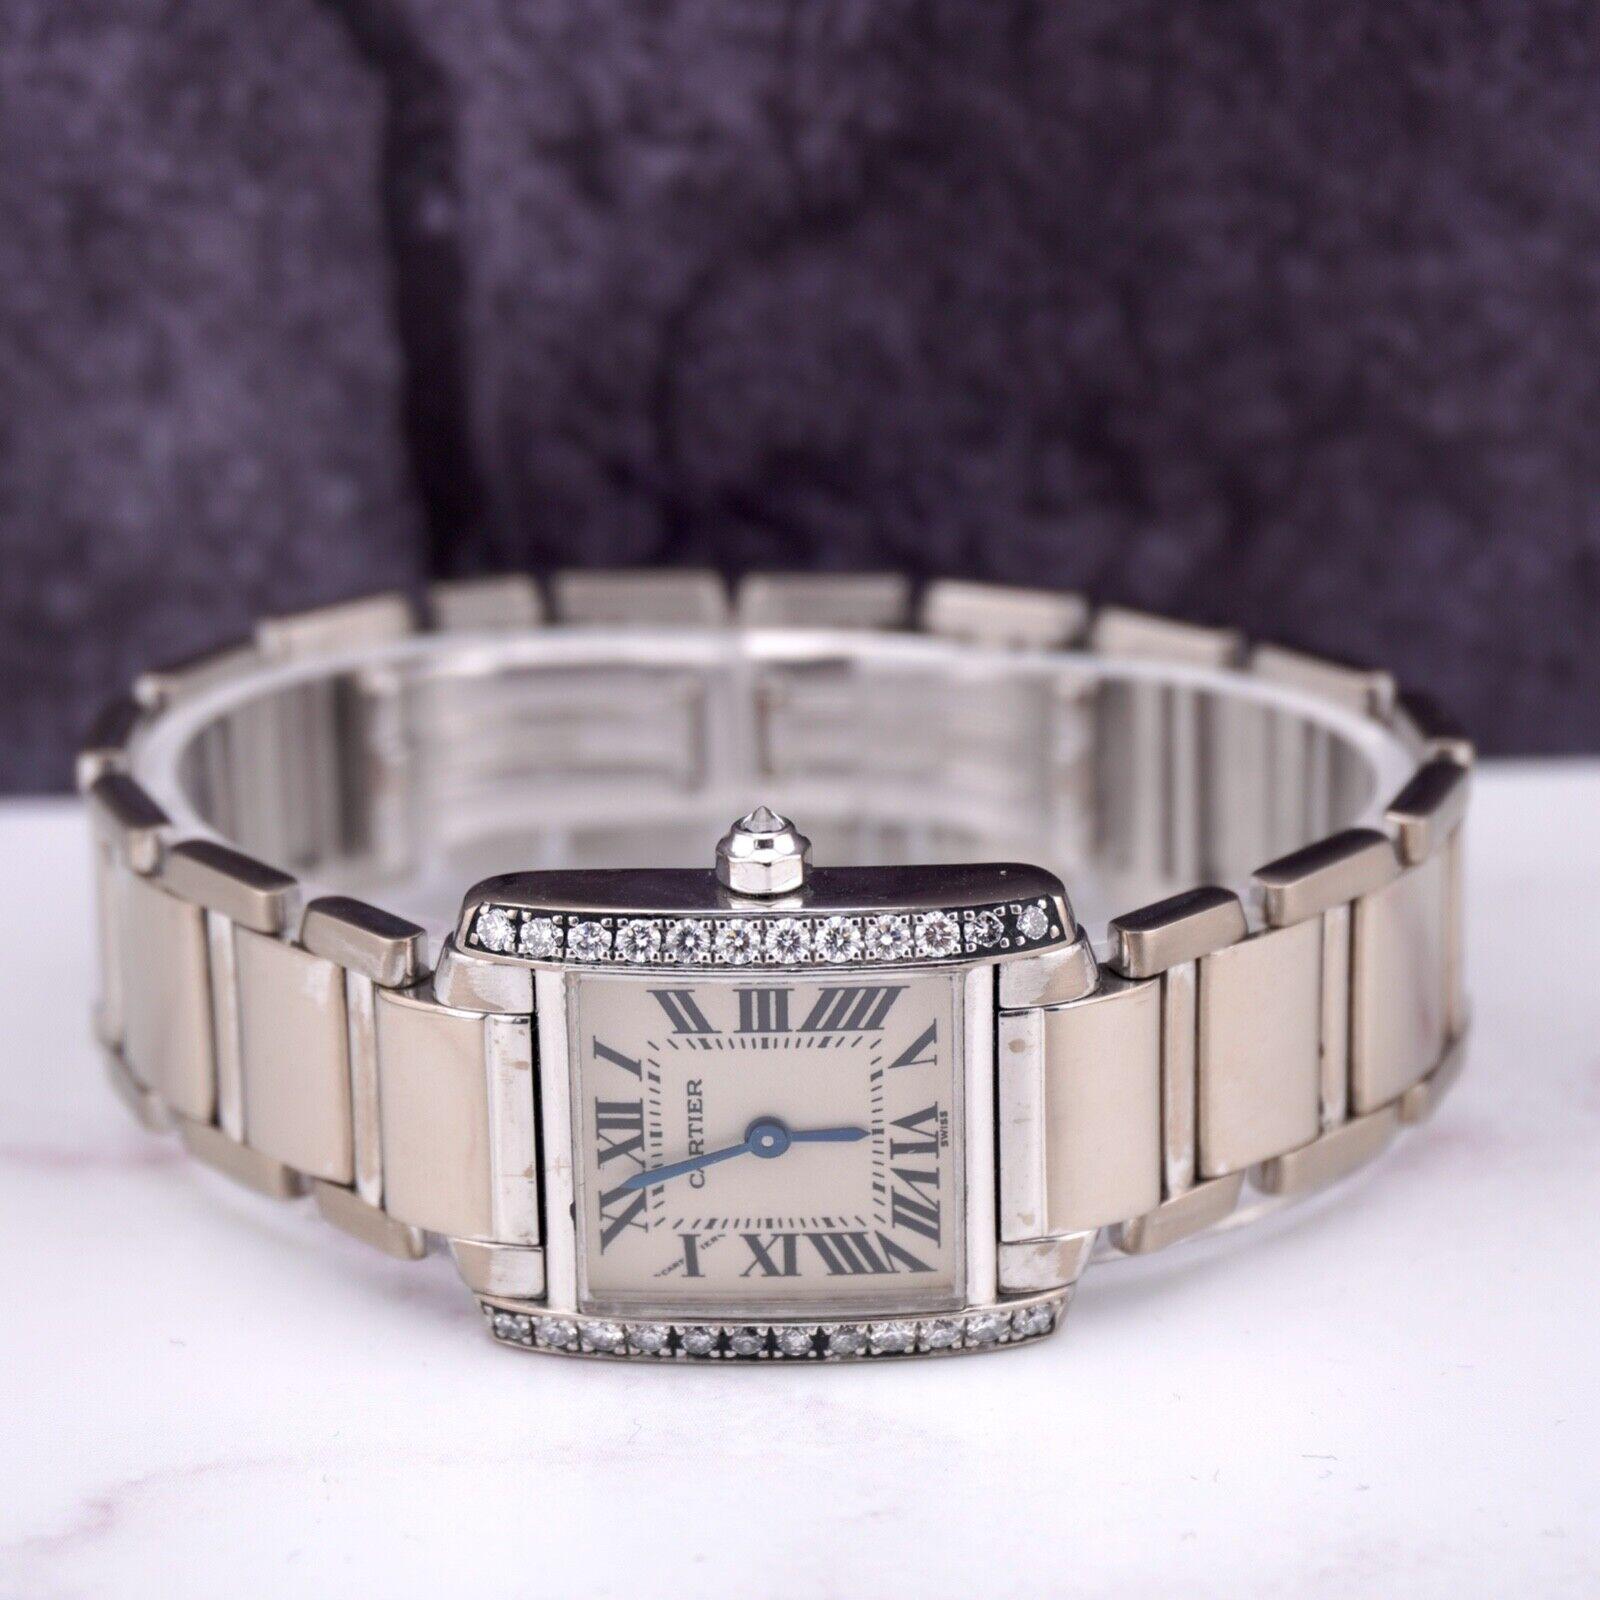 Montre Cartier Tank Francaise 30mm. Une montre d'occasion avec boîte cadeau. La montre est 100% authentique et est accompagnée d'une carte d'authenticité. La référence de la montre est 2403 et elle est en bon état (voir photos). La couleur du cadran